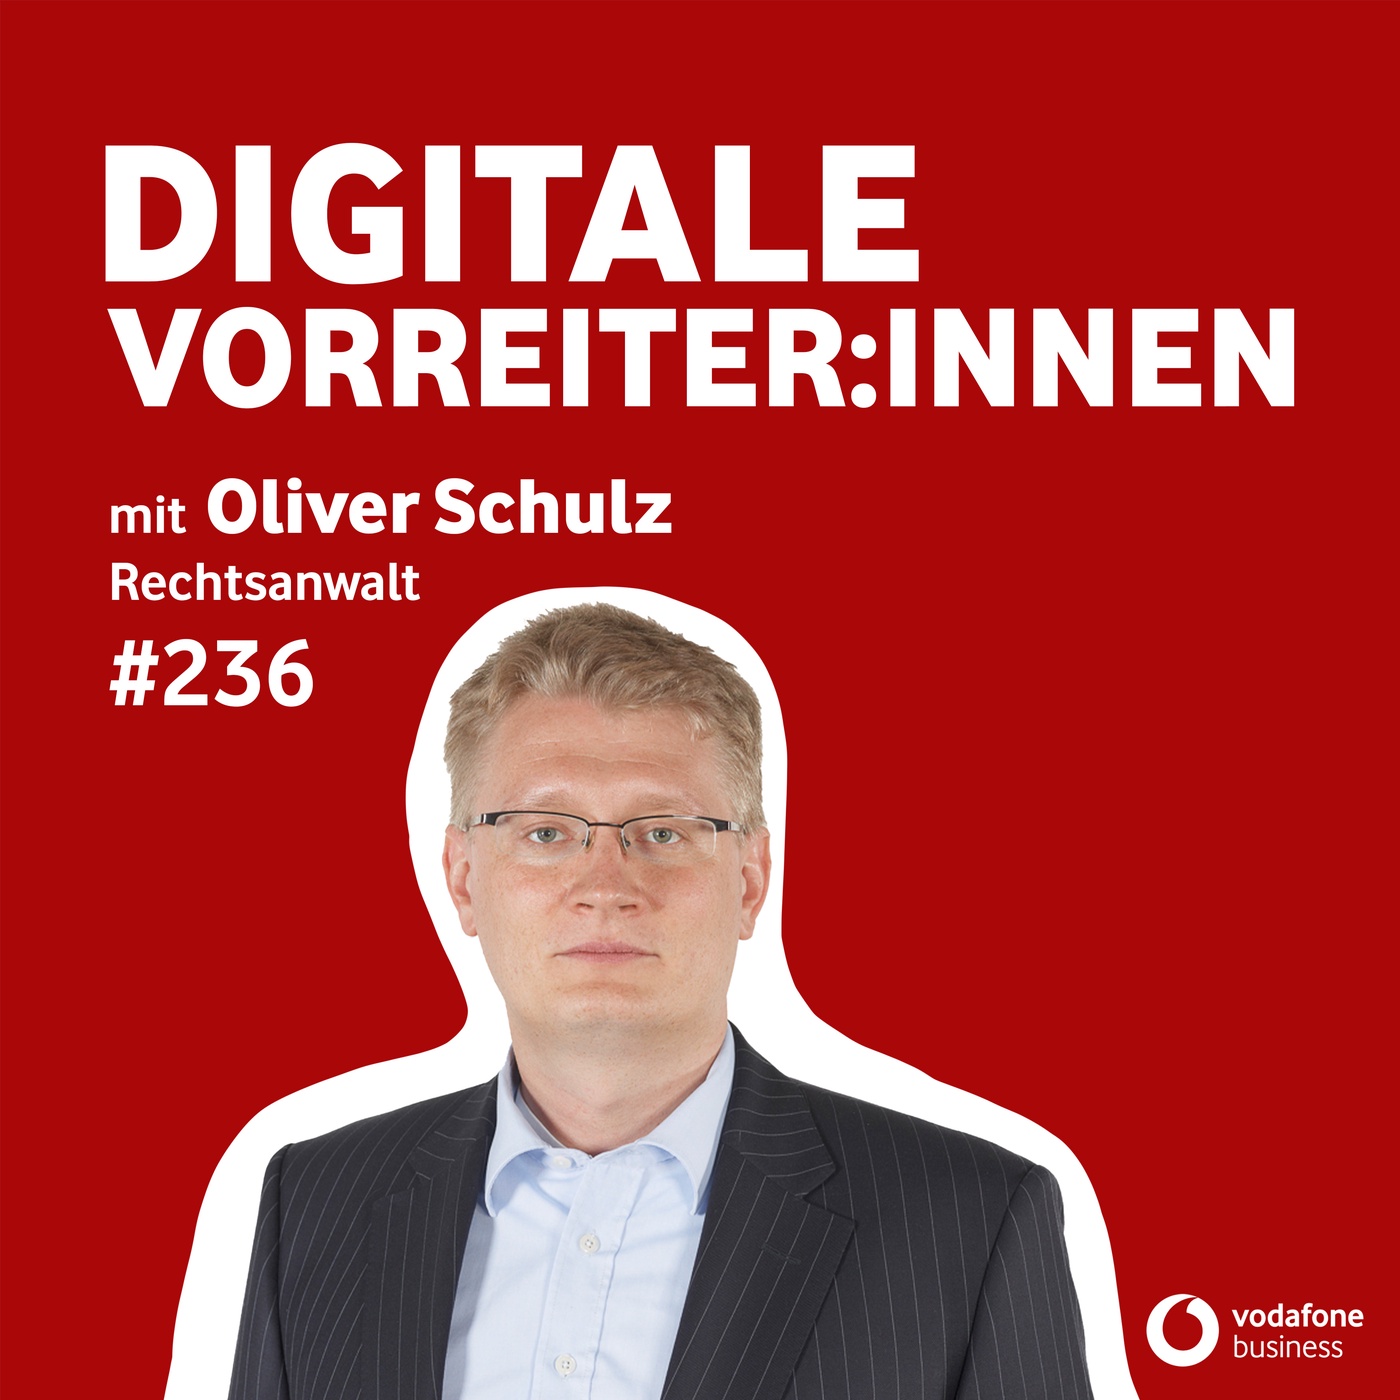 Recht & Robotik: mit digitalen Lösungen aus den Schulden - mit Oliver Schulz von Schulz & Partner